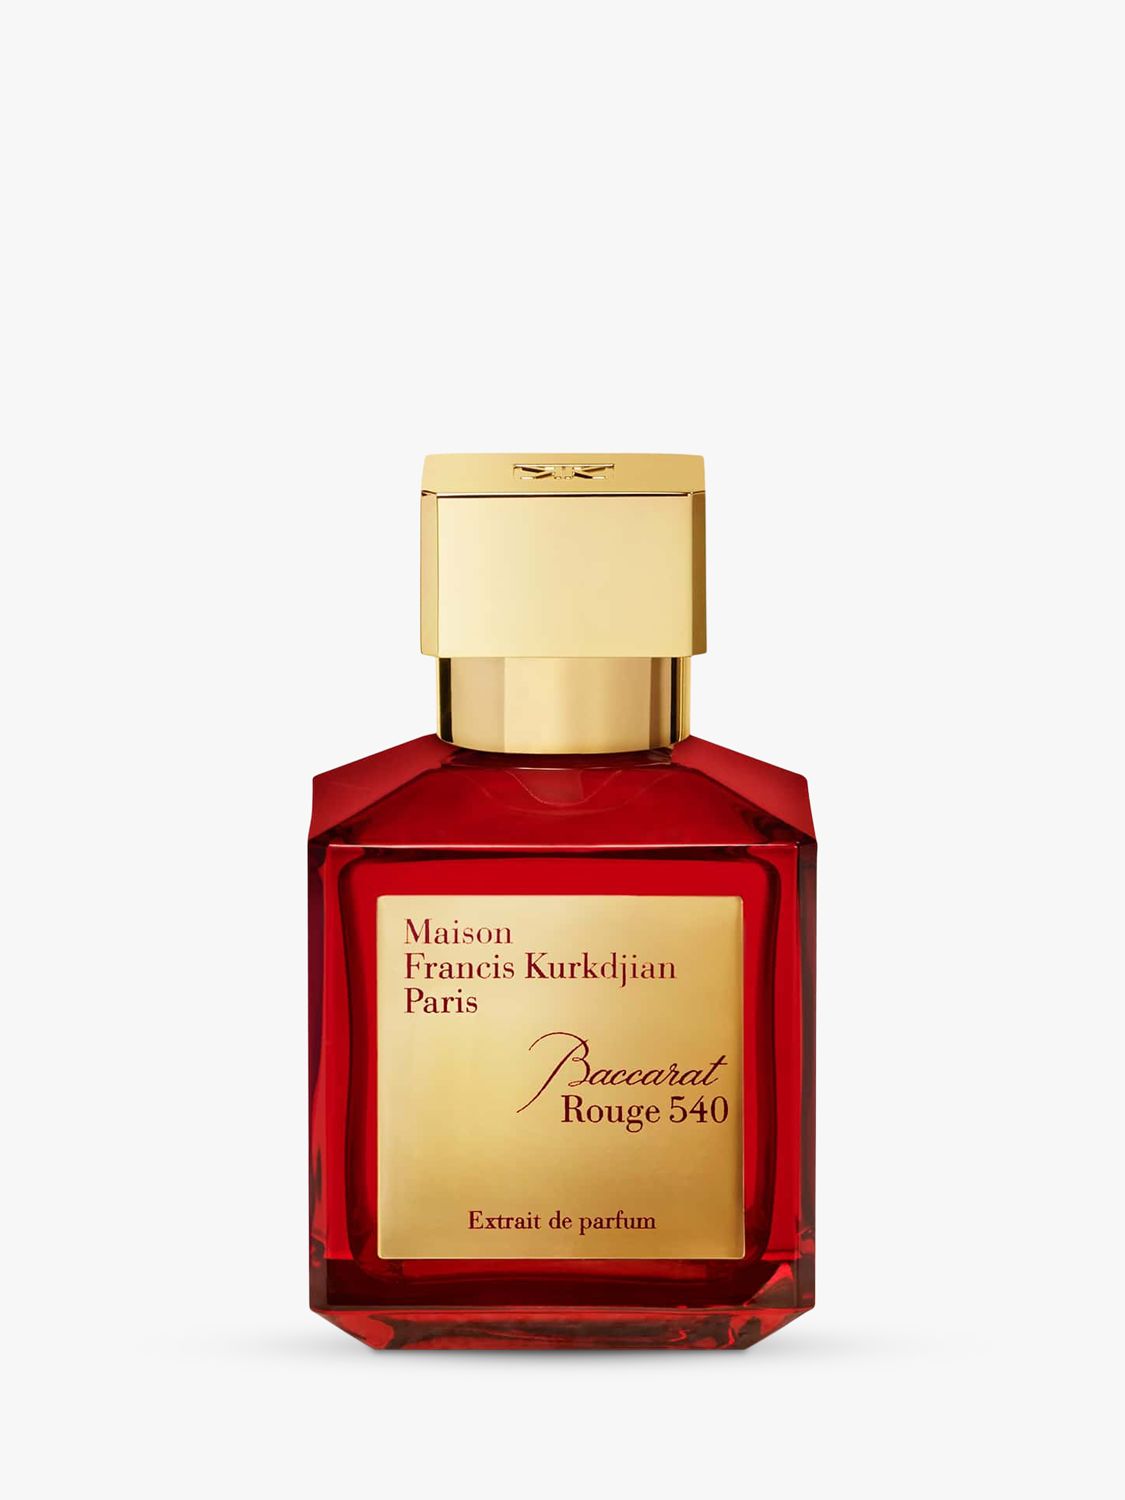 Maison Francis Kurkdjian Baccarat Rouge 540 Extrait de Parfum, 70ml